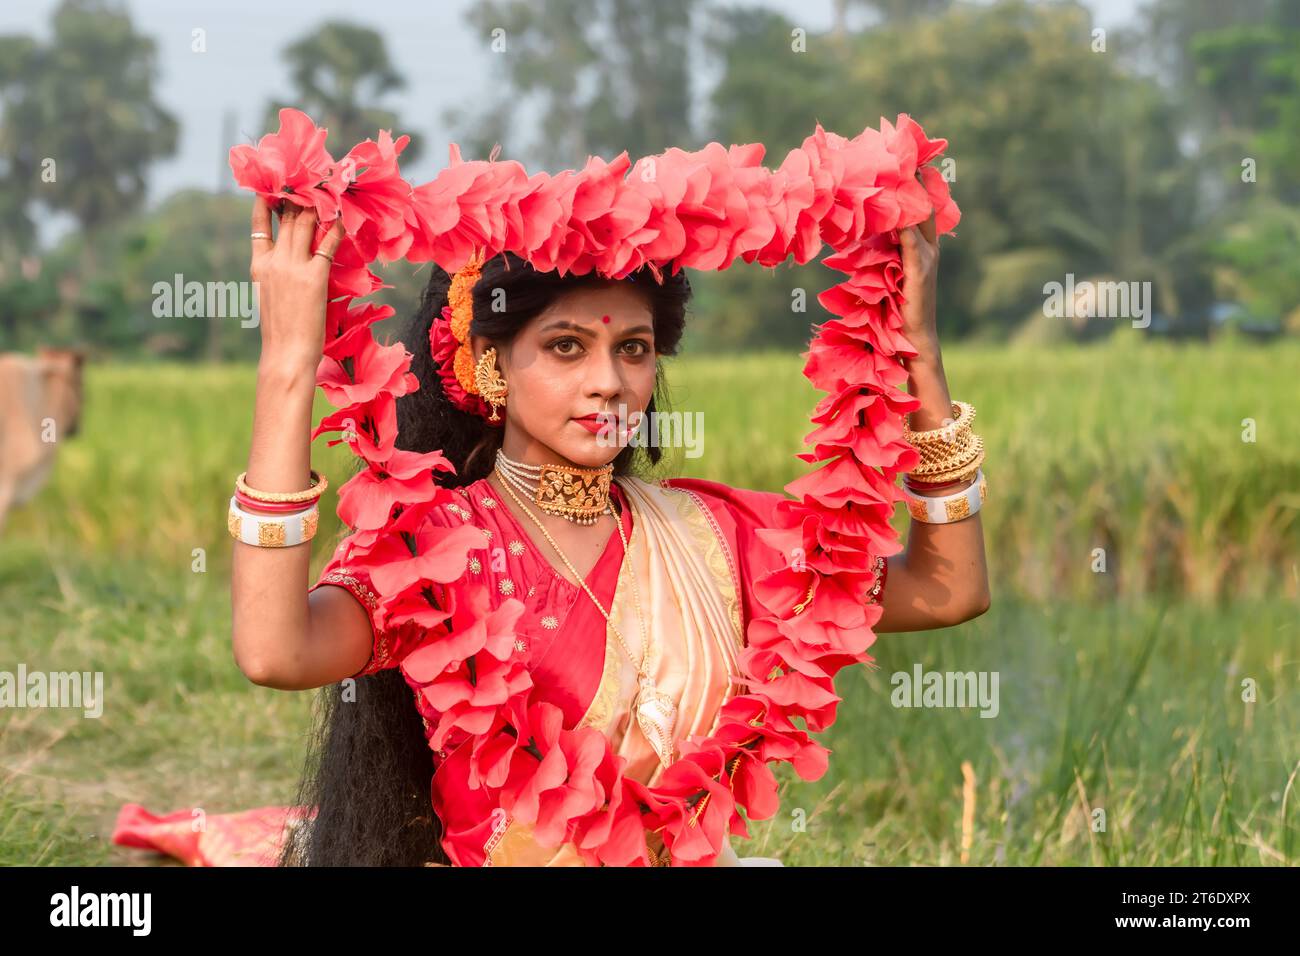 Servizio fotografico kali Puja Look basato sul Festival con aspetto etnico.come Un volto di donna sposata indù.Navratri felice, cultura indiana. Foto Stock